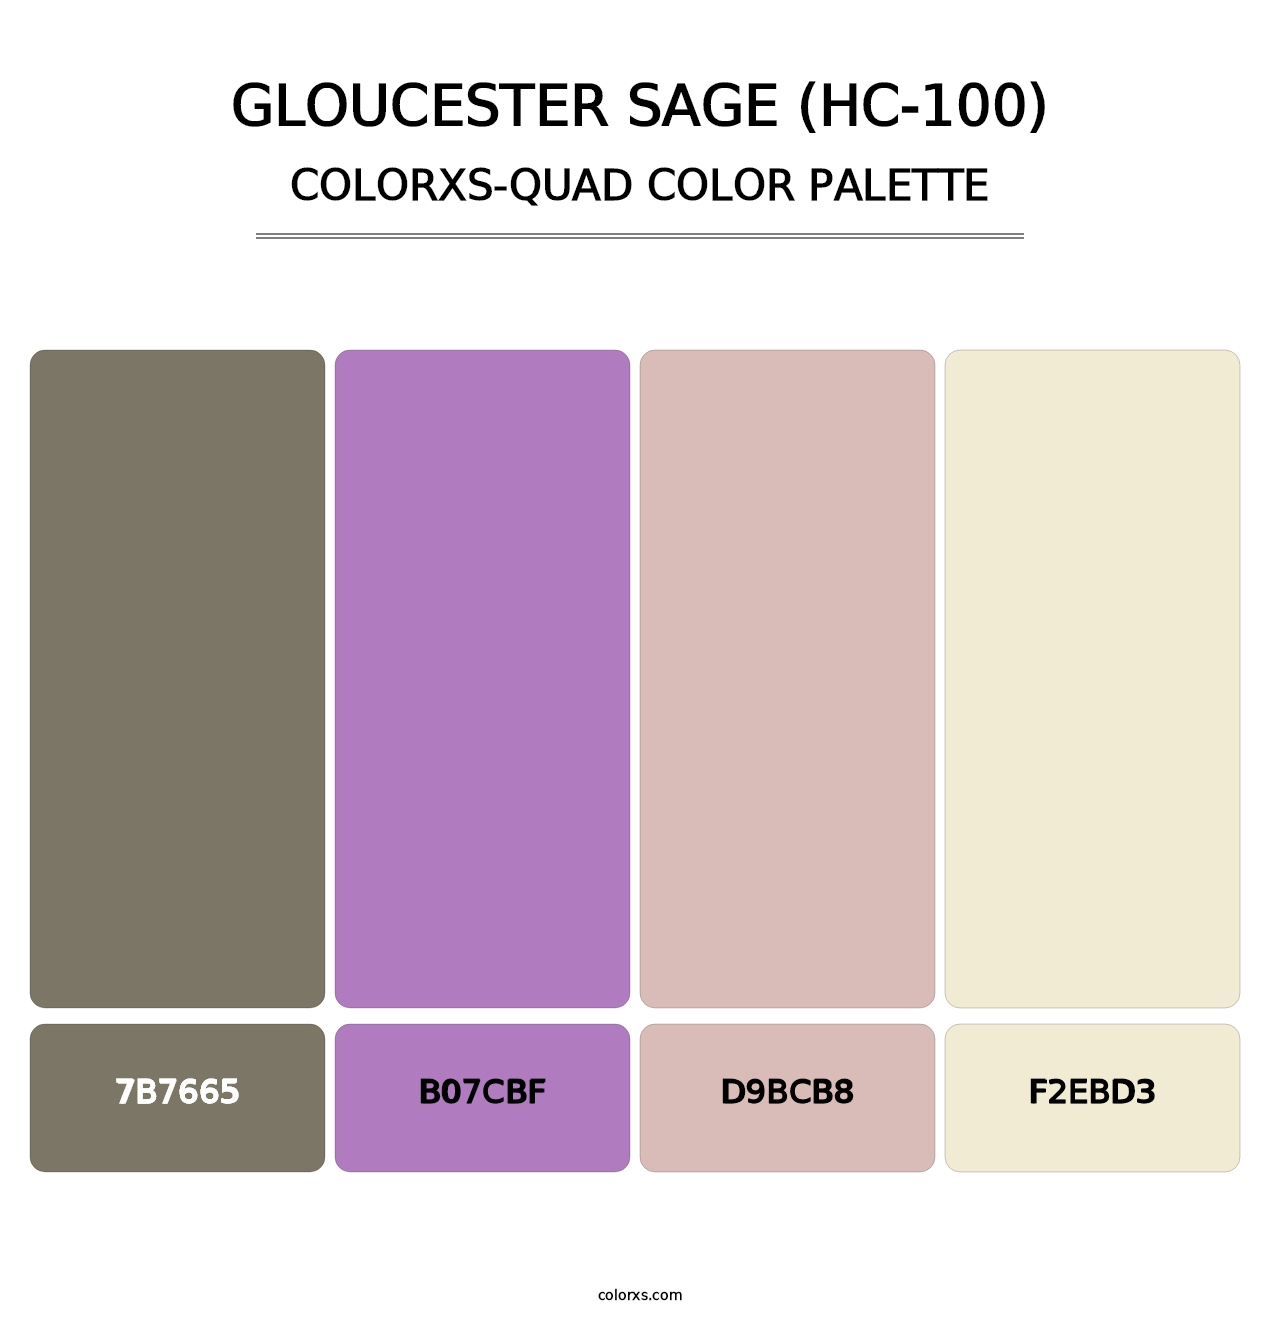 Gloucester Sage (HC-100) - Colorxs Quad Palette